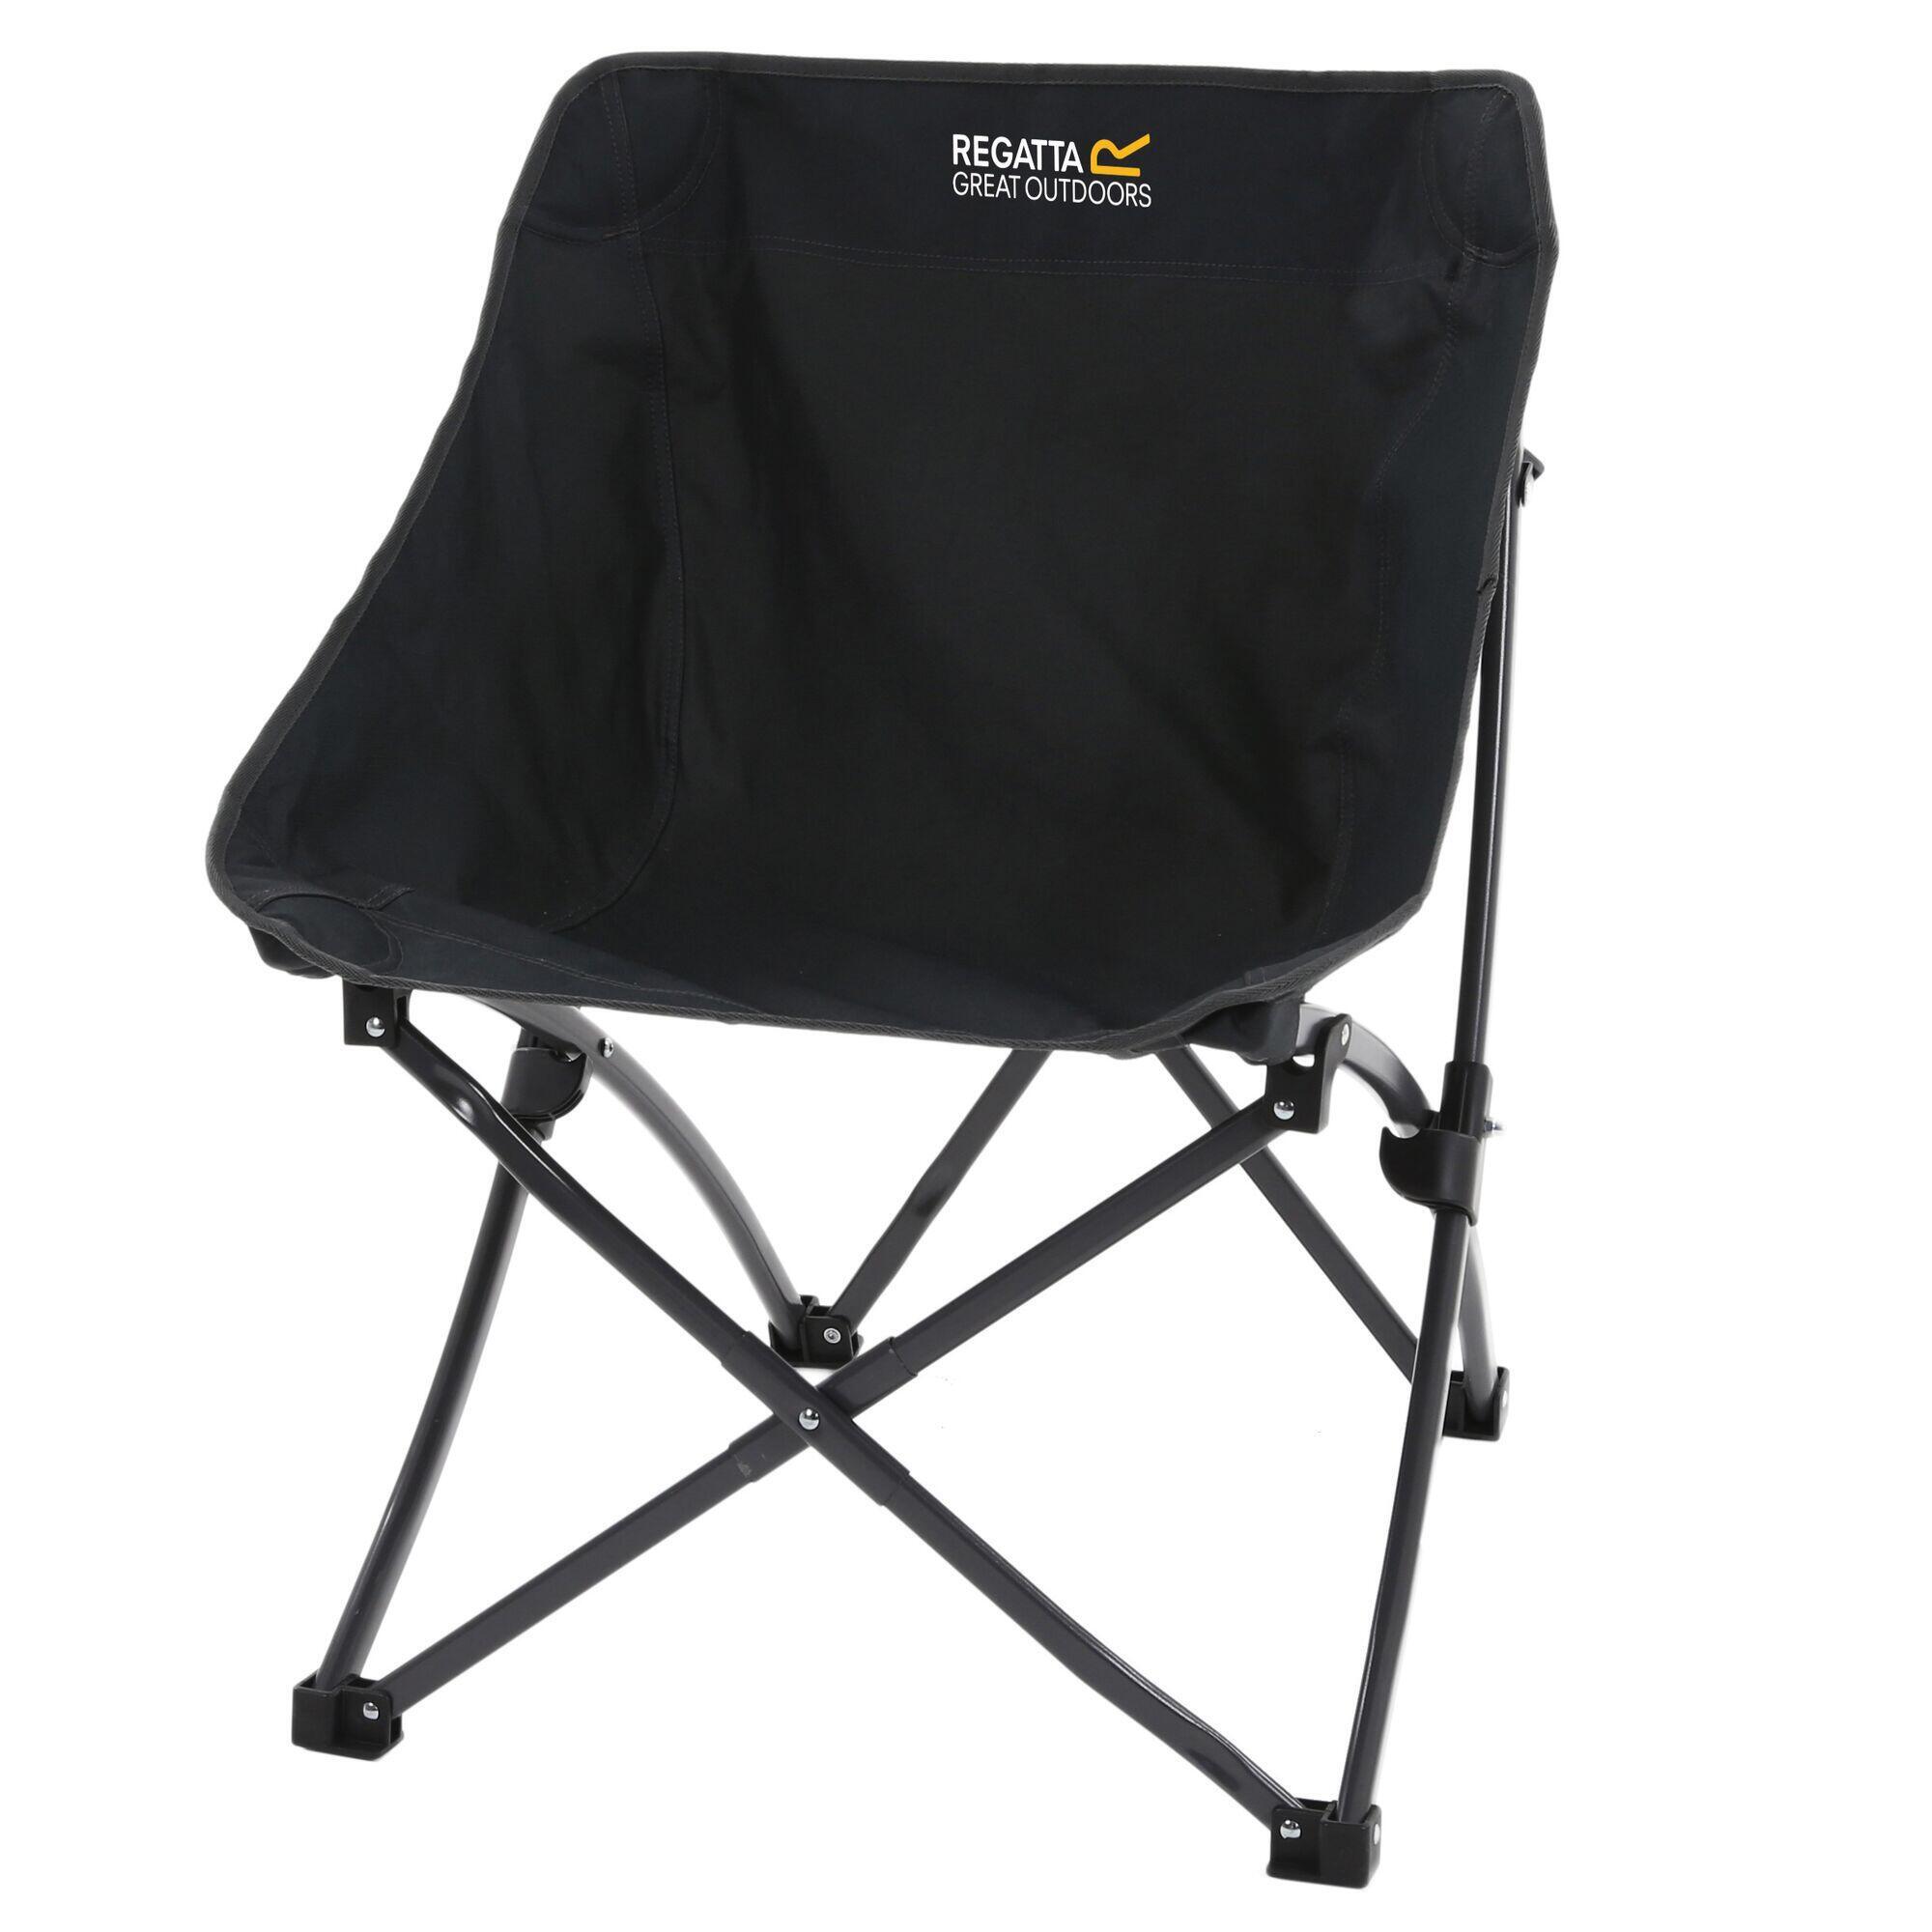 Стул складной Regatta Forza Pro Adult для кемпинга, черный складной стул уличный складной стул складной стул небольшой стул складной портативный складной стул для рыбалки